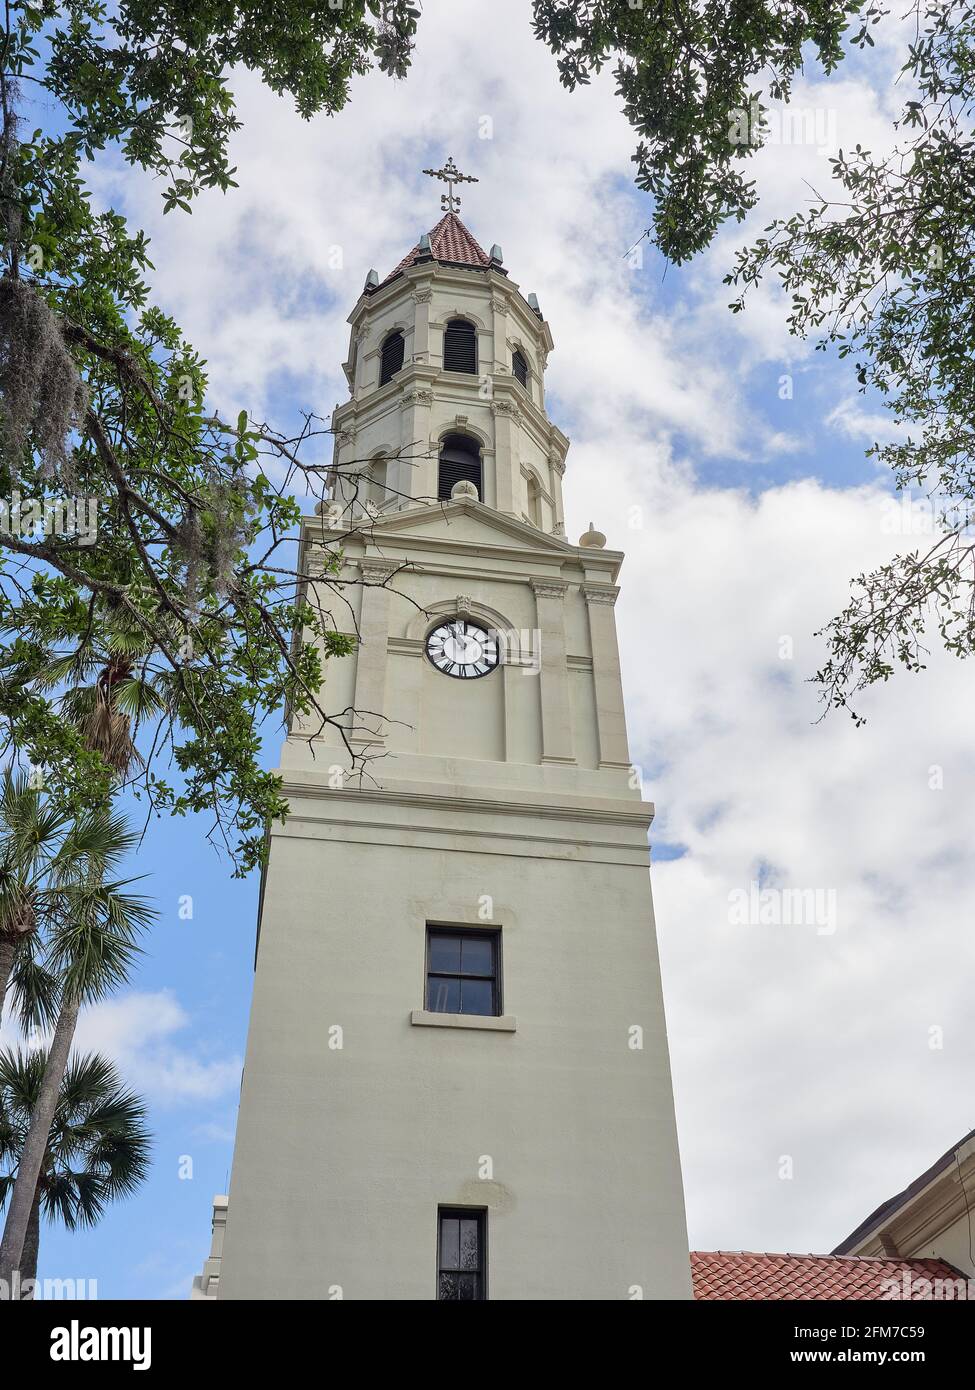 Der Glockenturm der Kathedrale von St. Augustine, der ältesten katholischen Gemeinde der USA, wurde in St. Augustine, Florida, gefunden. Stockfoto